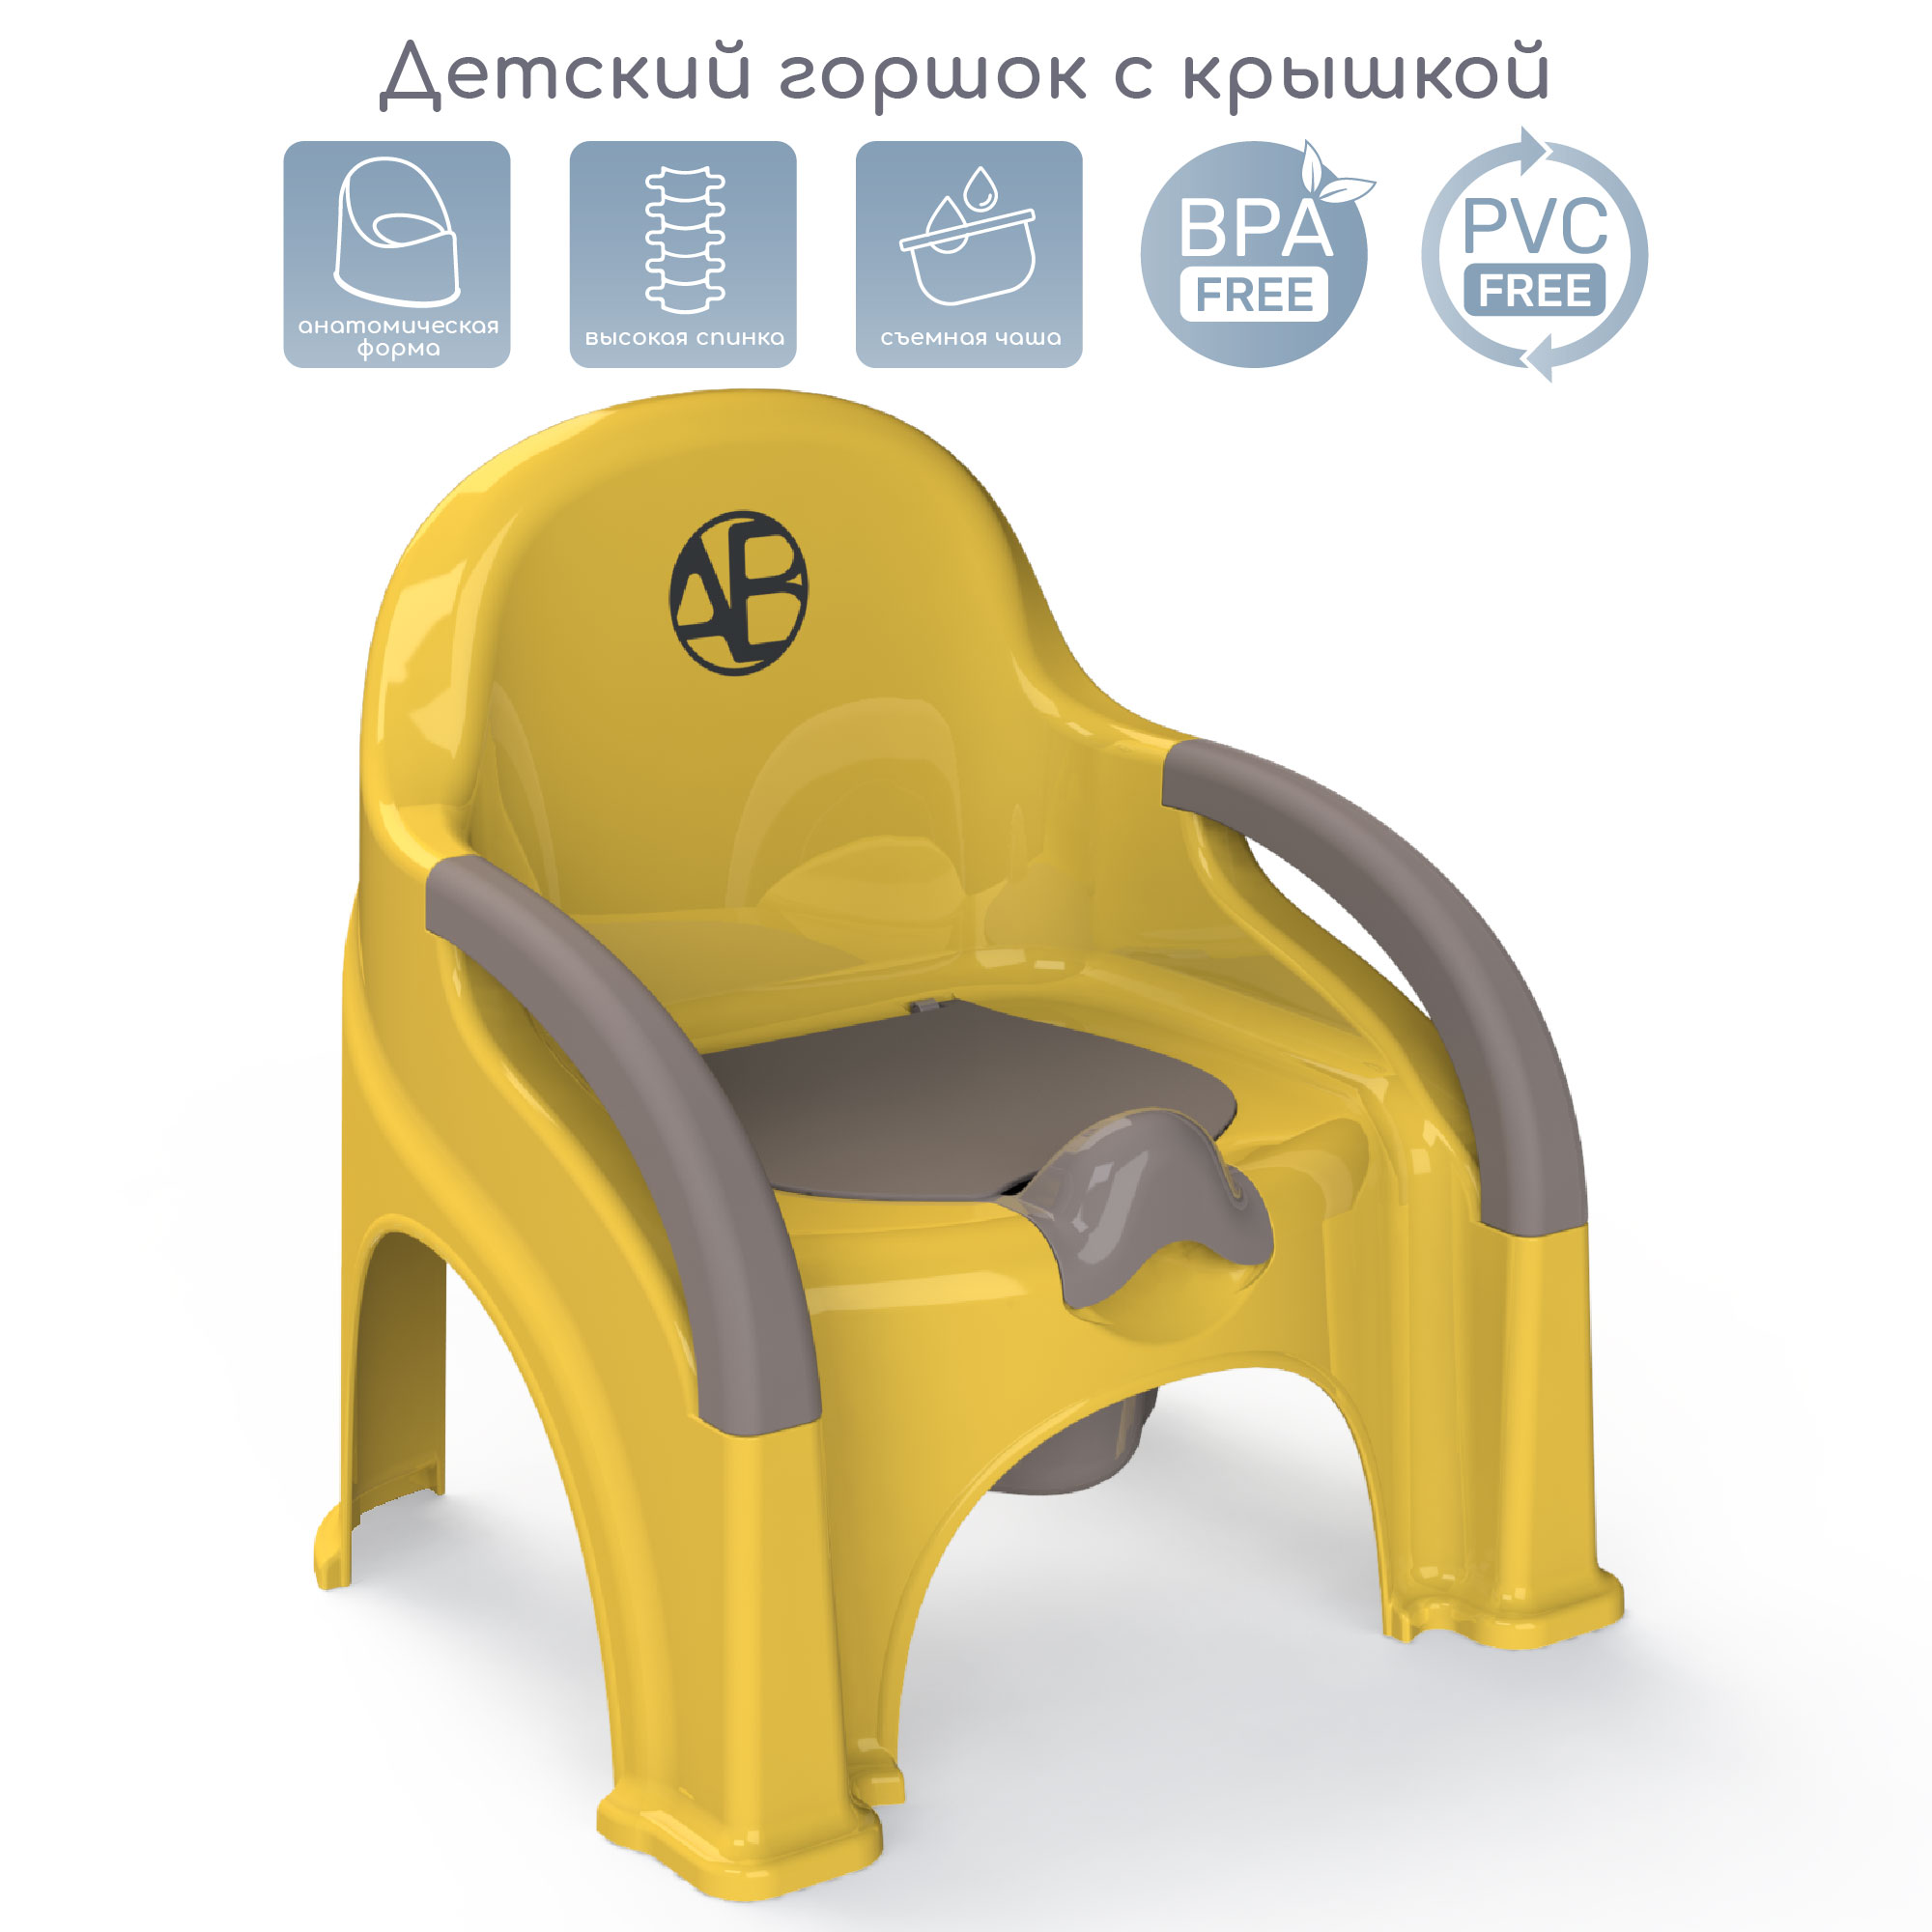 Горшок-стул Amarobaby Baby chair, жёлтый, AB221105BCh/04 комплект одежды для новорожденных kari baby ss21b07900502 розовый жёлтый р 74